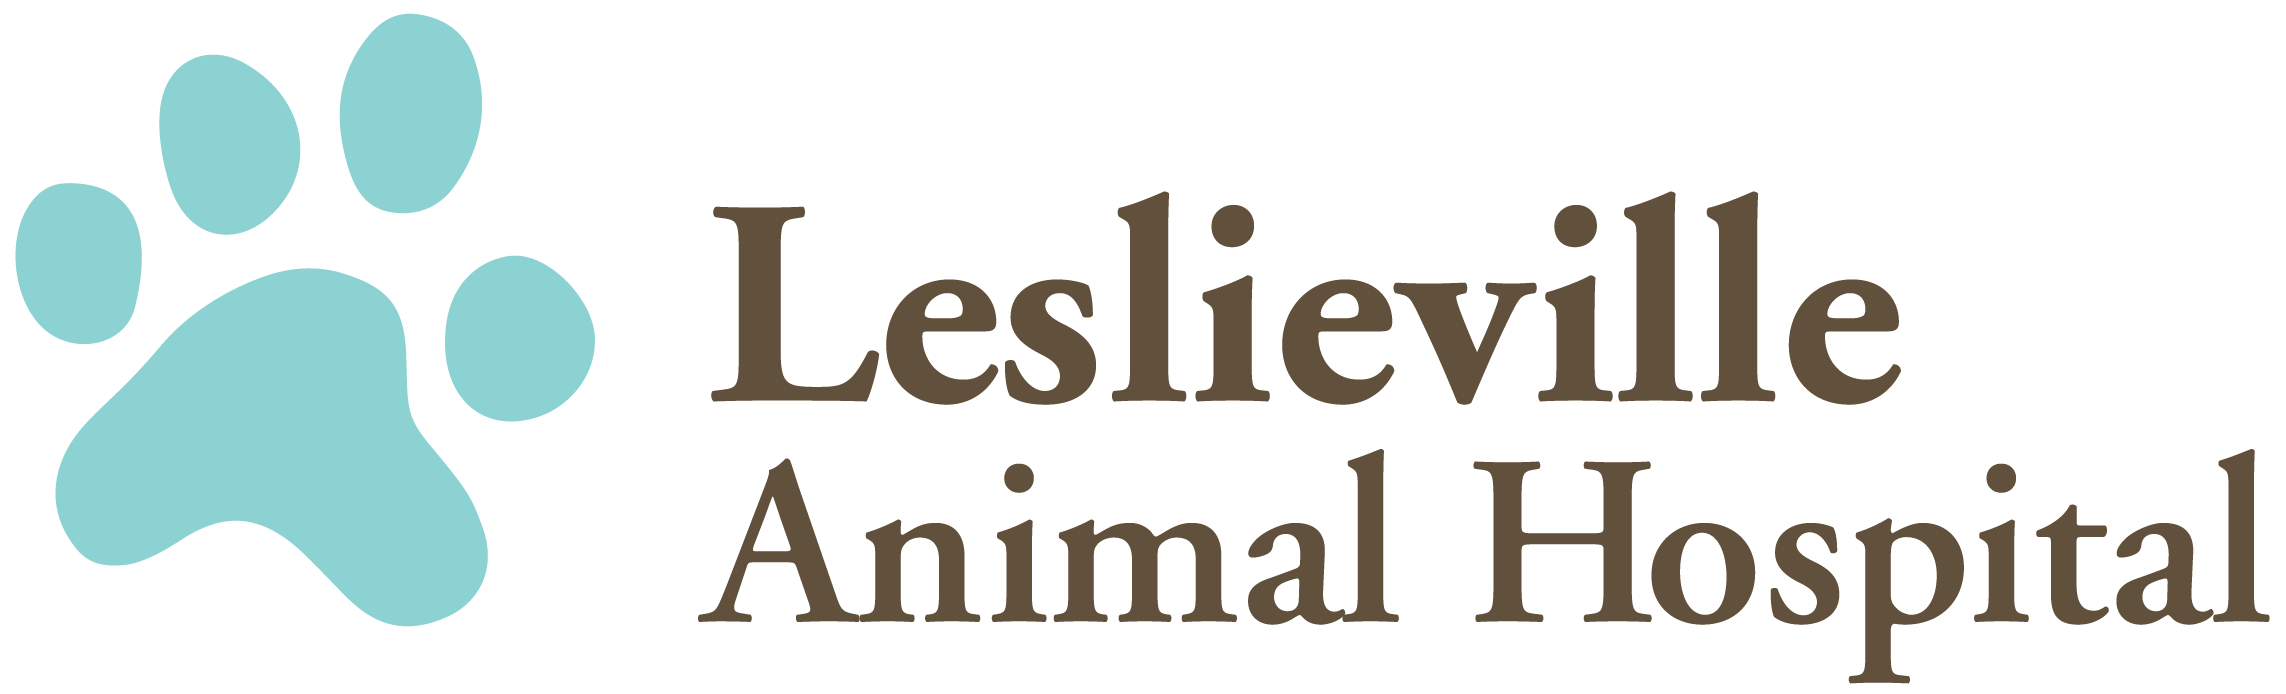 Leslieville Animal Hospital: Veterinarian in Toronto, ON